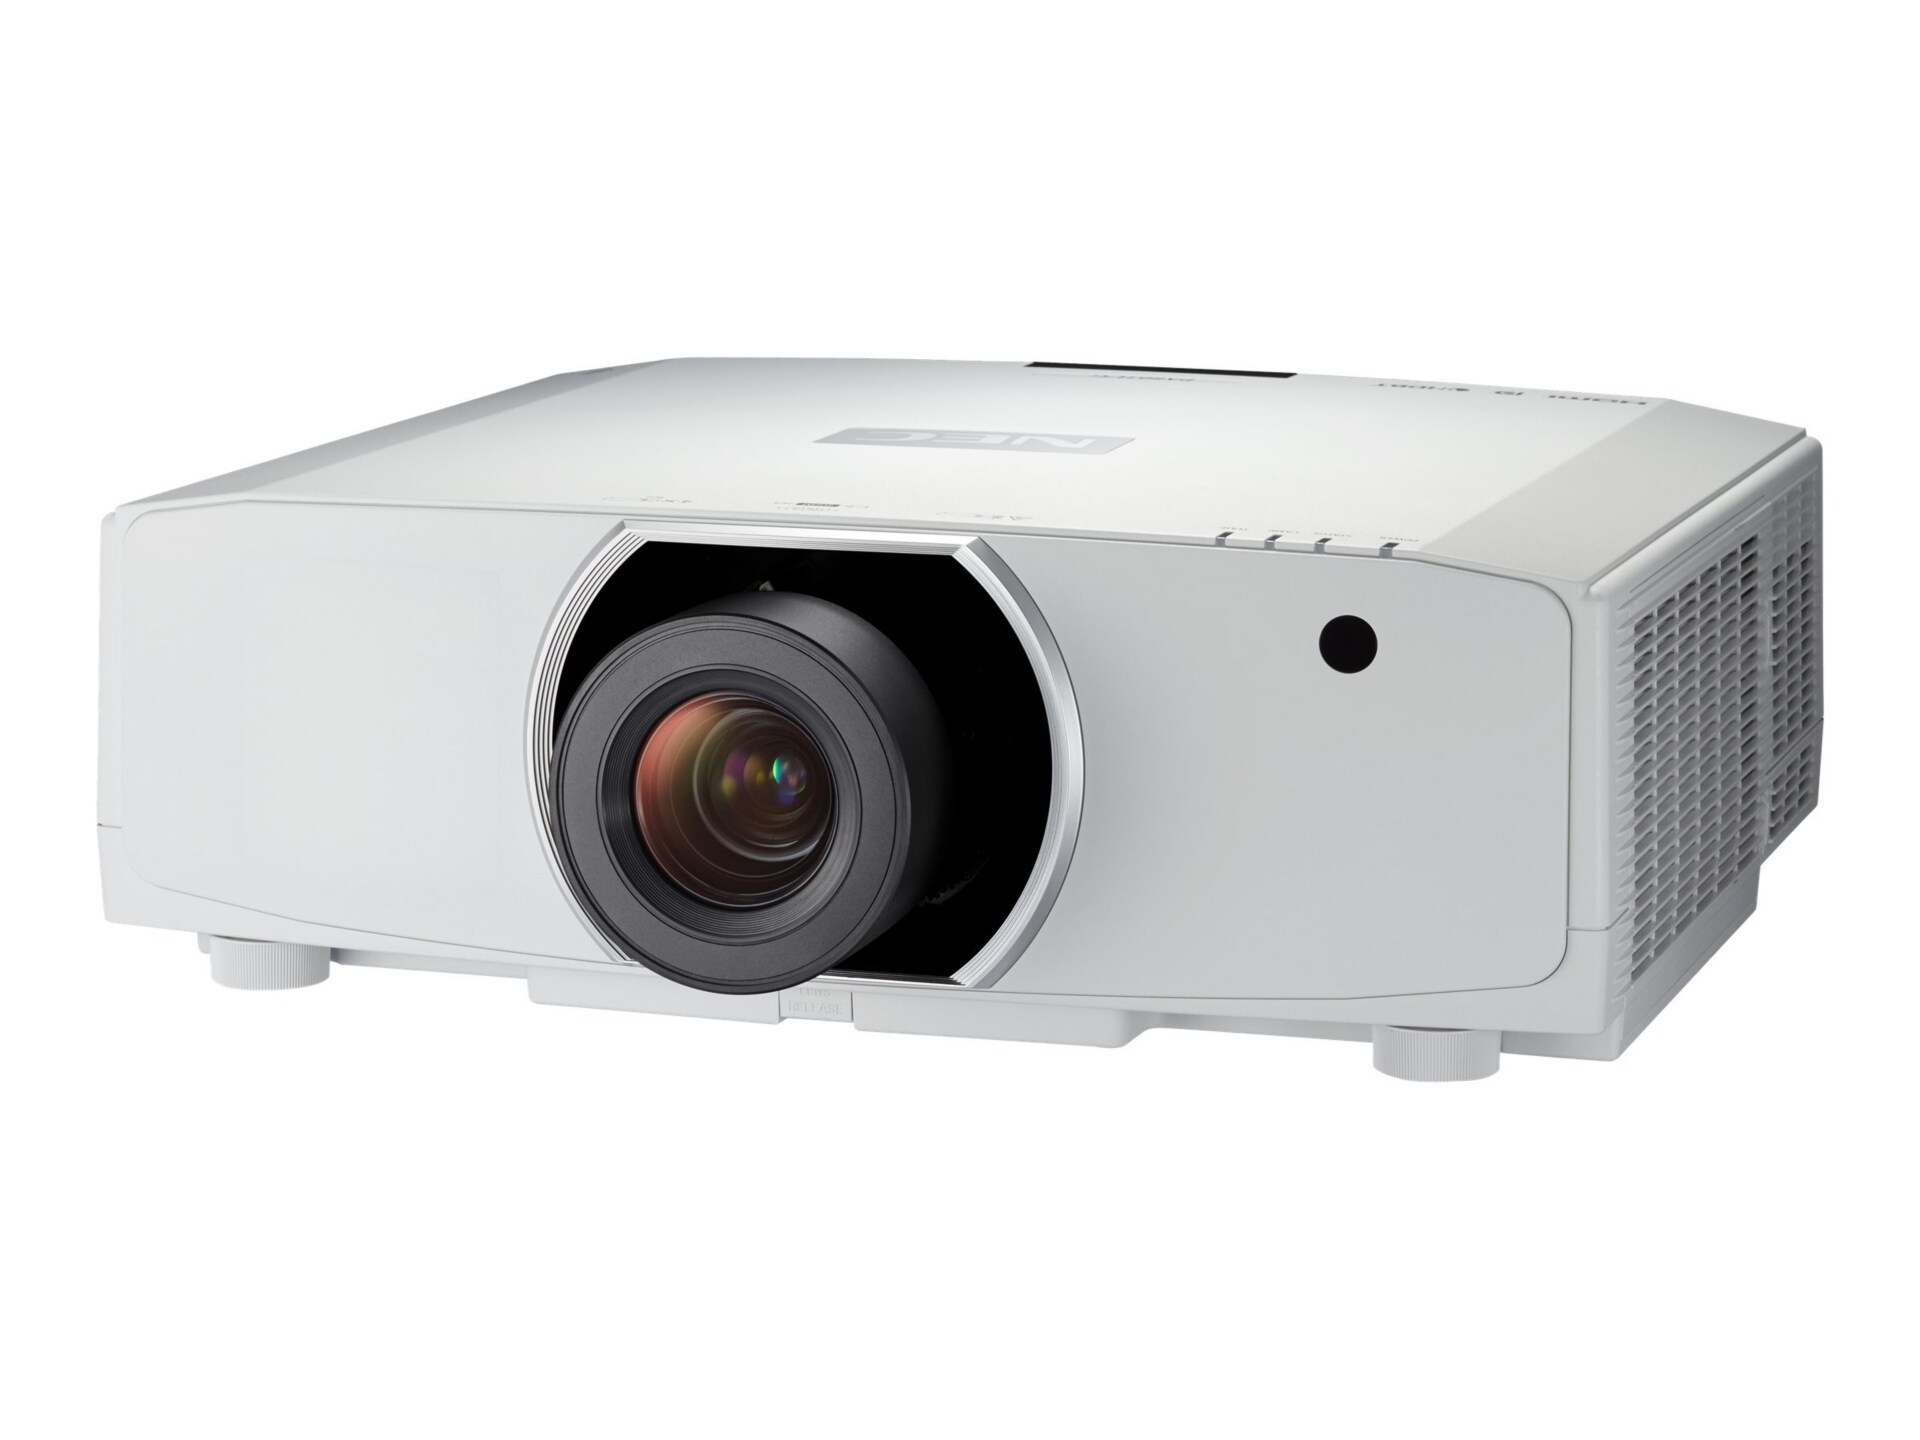 NEC NP-PA903X - LCD projector - no lens - 3D